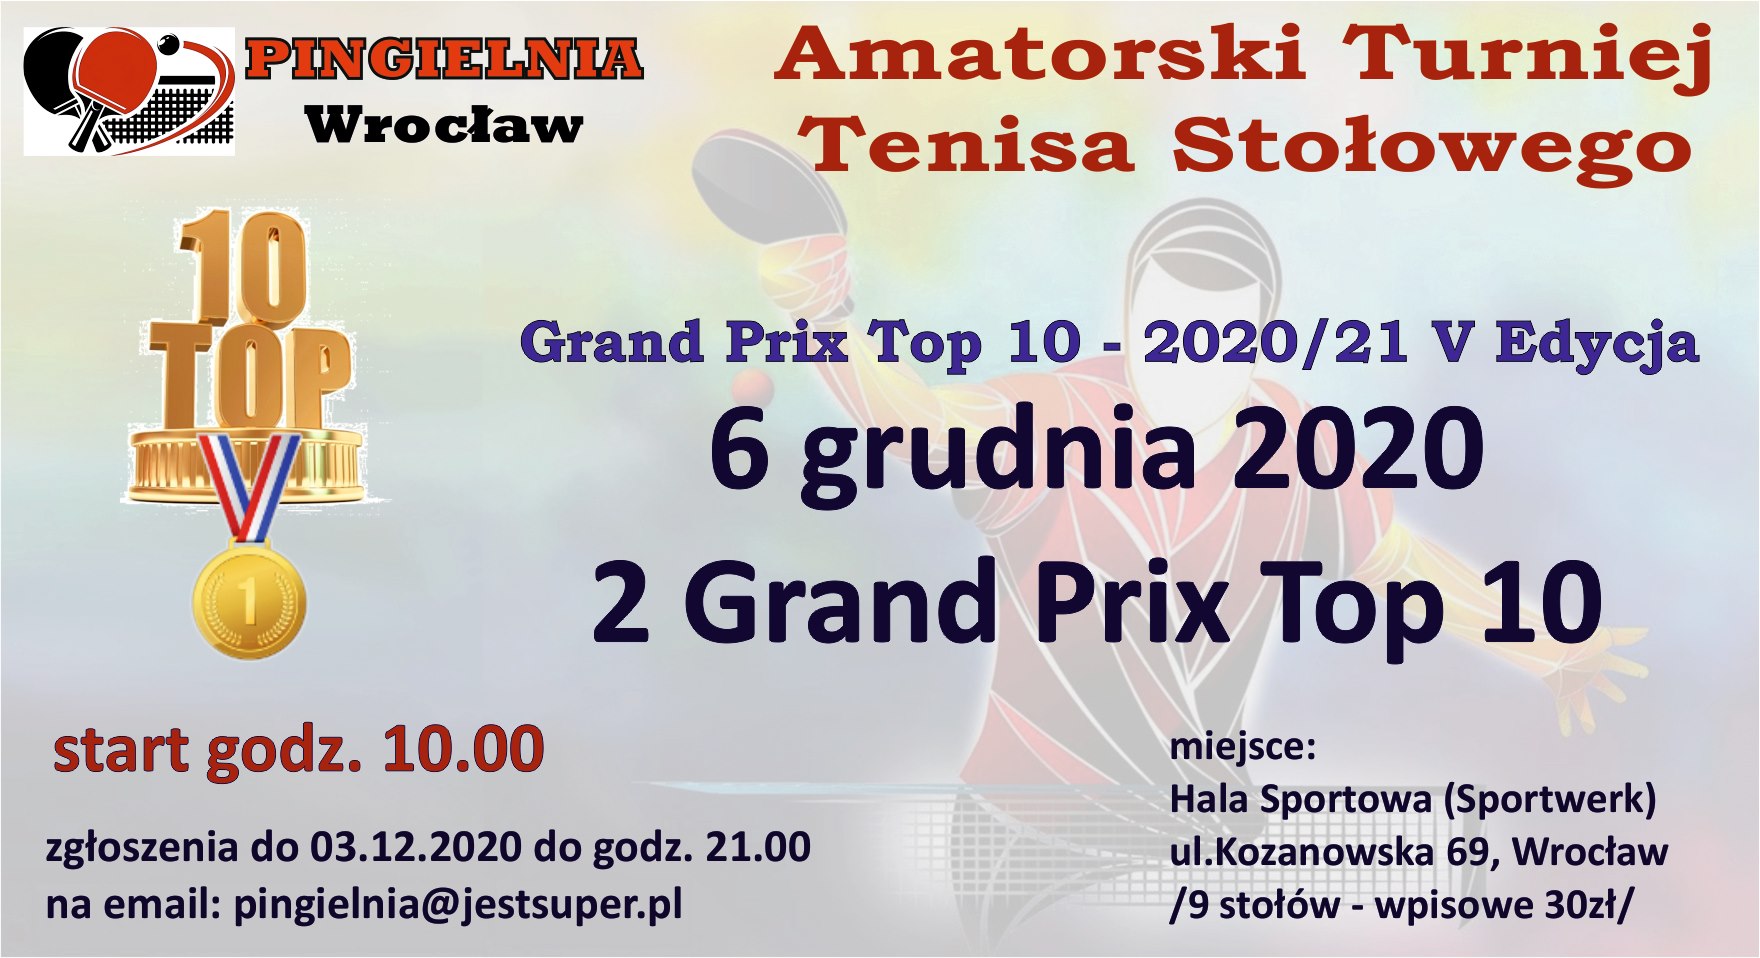 Plakat turnieju Amatorski Turniej Tenisa Stołowego- 2 GRAND PRIX TOP 10